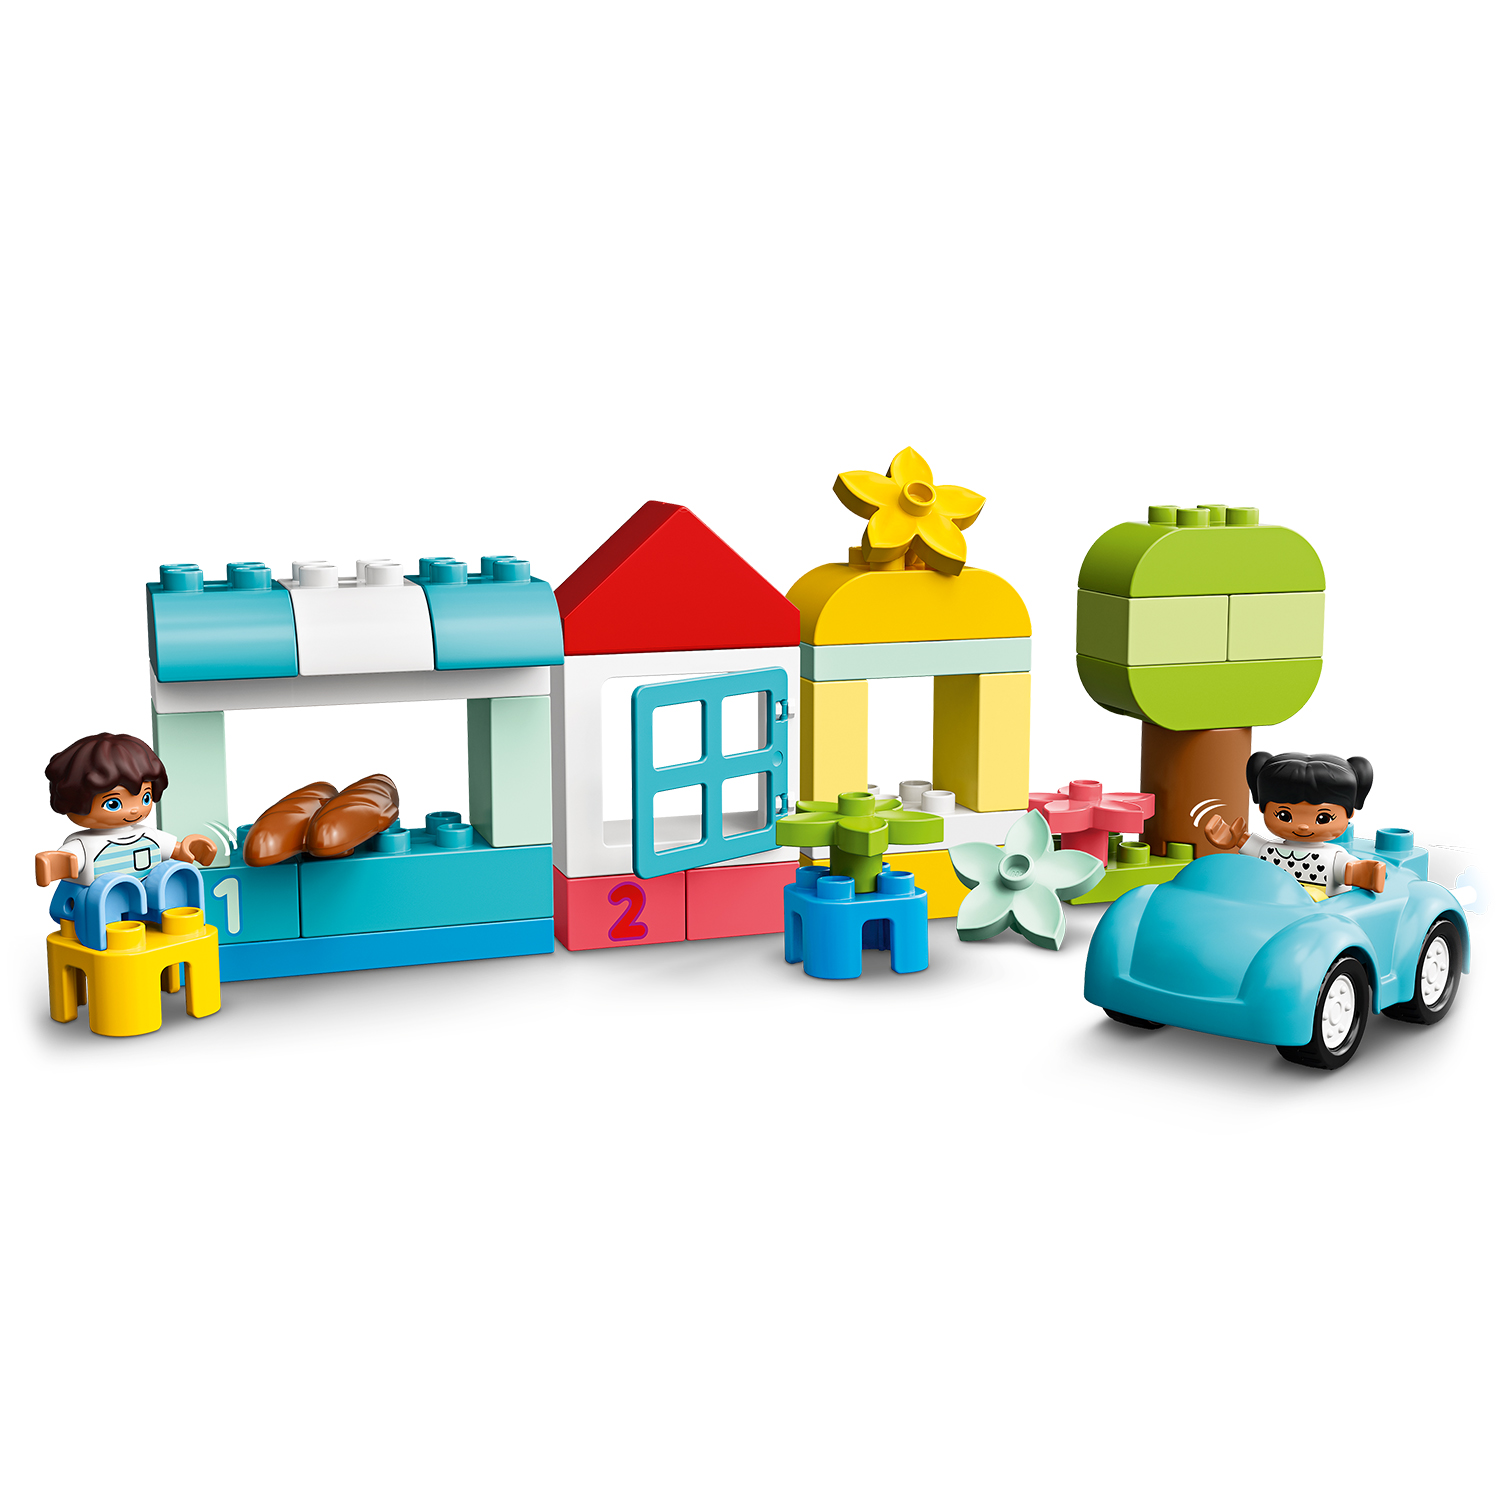 Mehrfarbig LEGO Bausatz, 10913 Steinebox DUPLO®